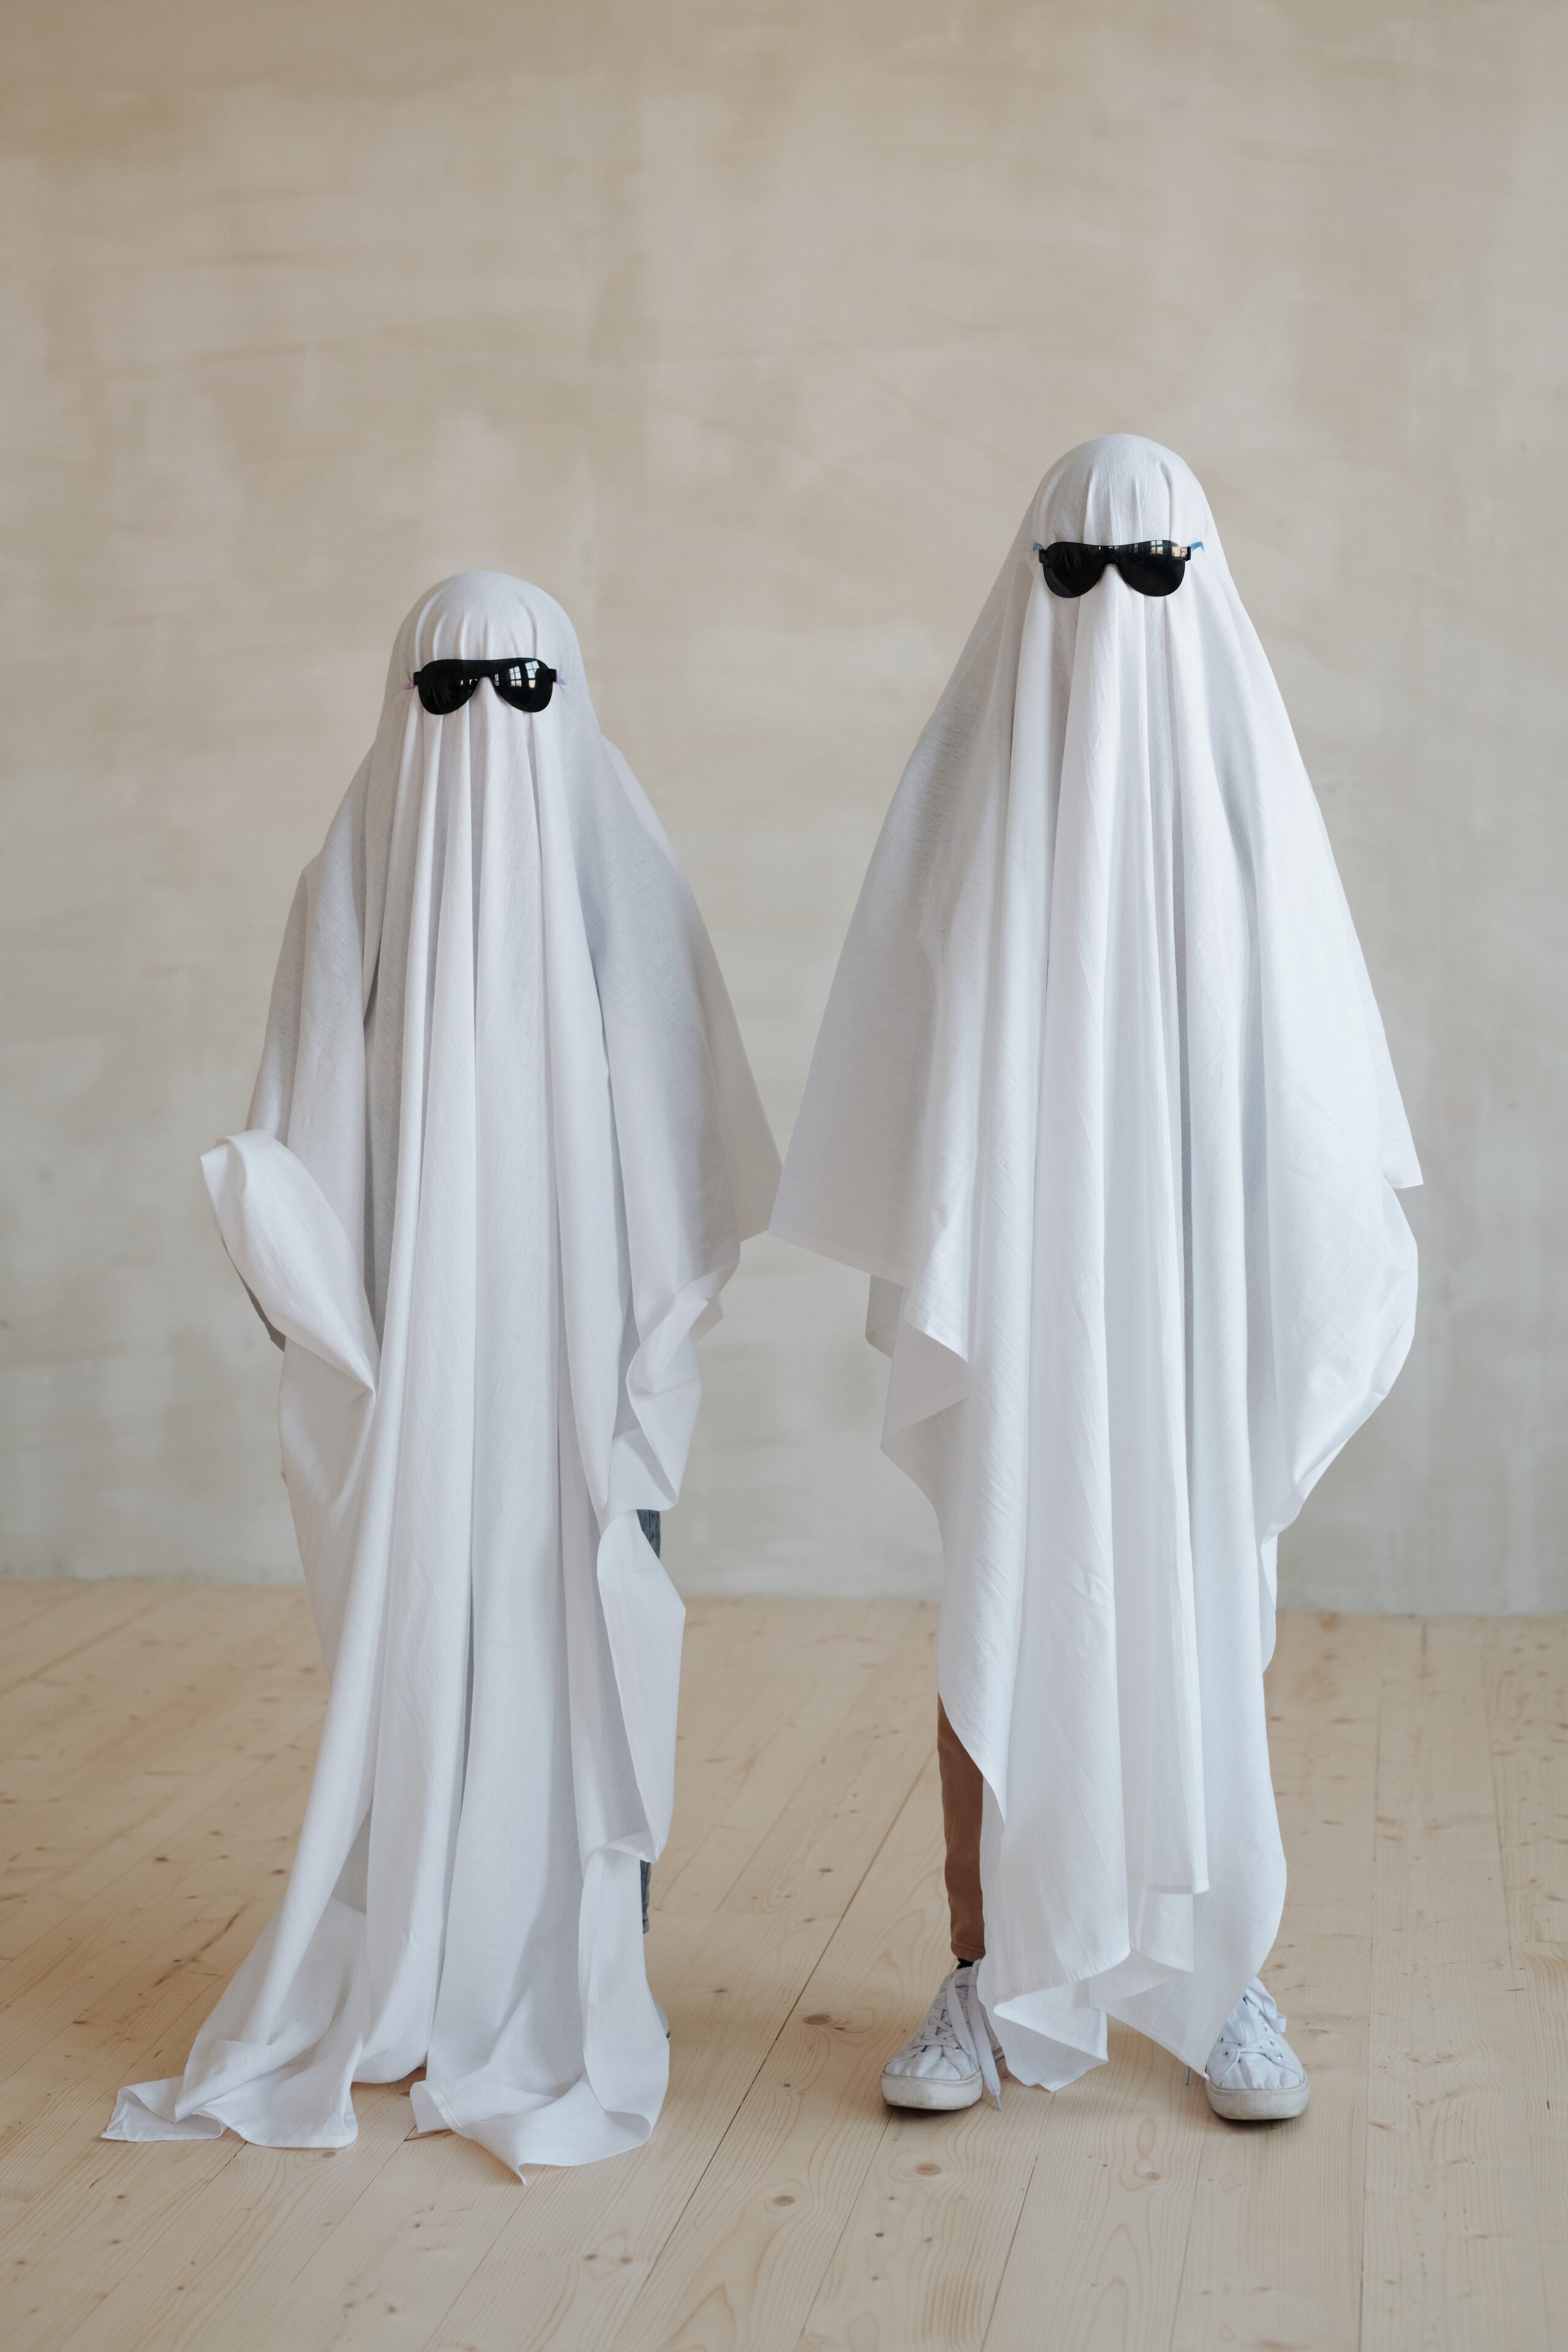 DIY Halloween Costume Lovers: Create Your Own Unique Look - Spirit  Halloween Blog